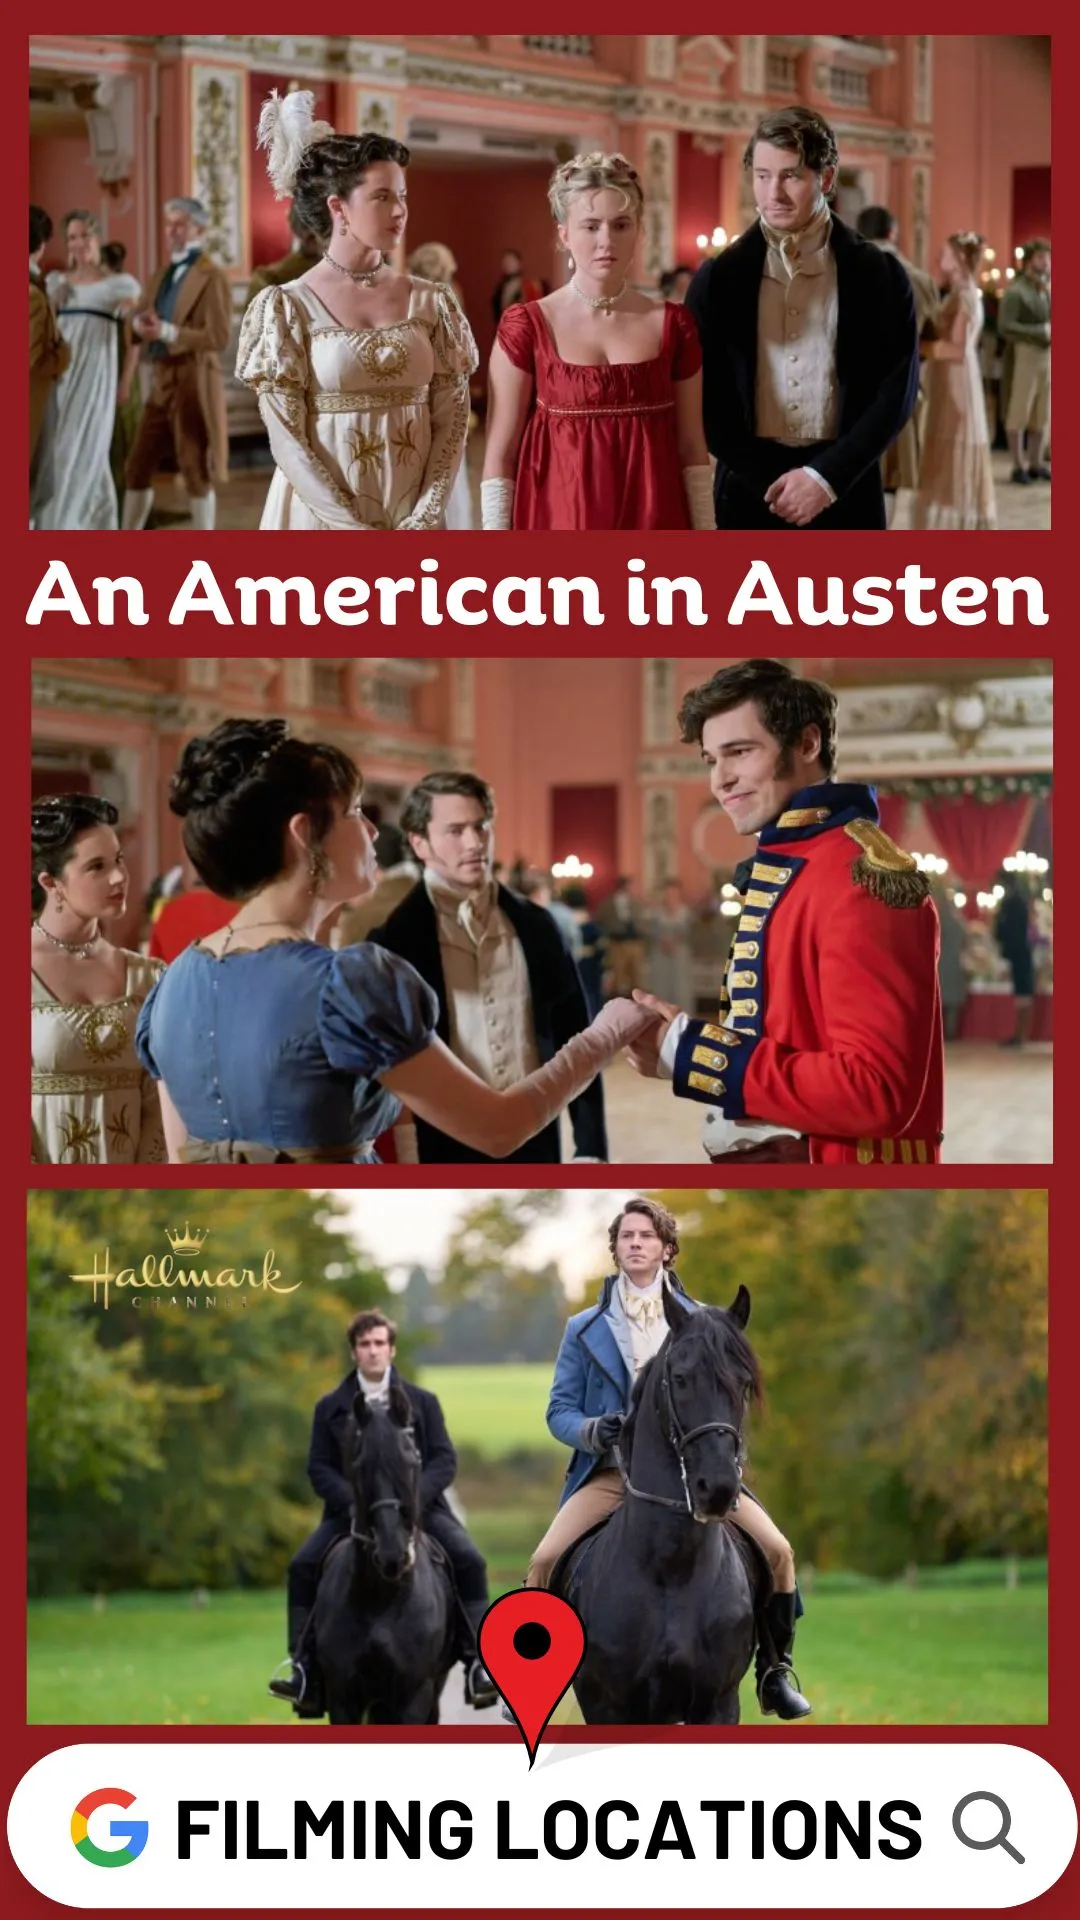 Where Is An American in Austen Filmed